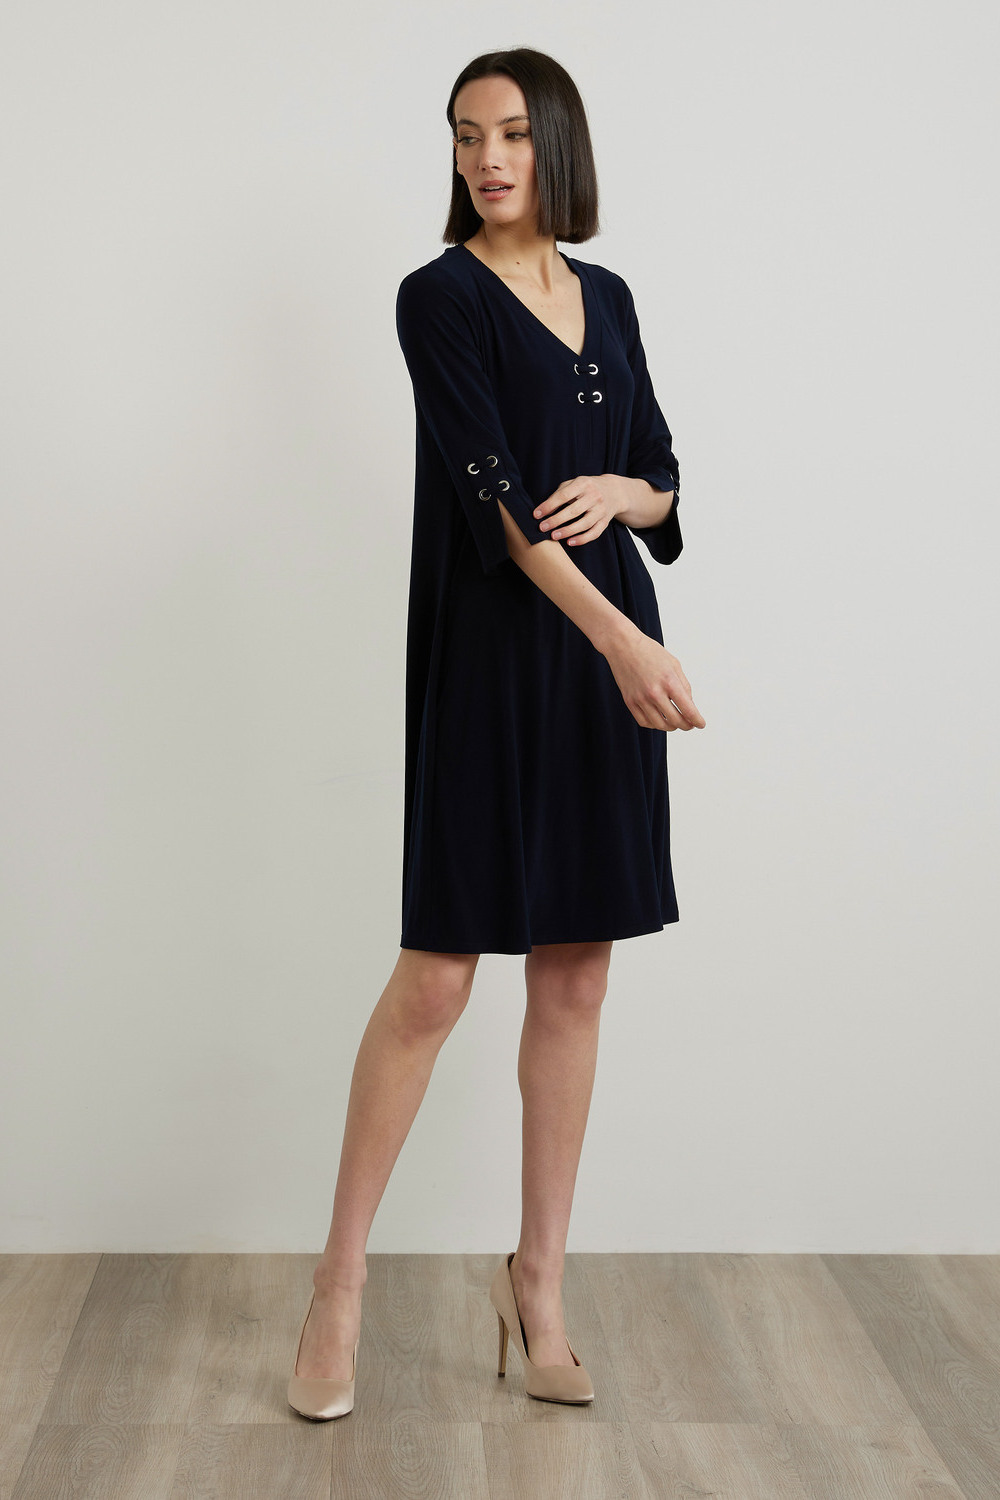 Joseph Ribkoff Fit & Flare Dress Style 213361. Midnight Blue